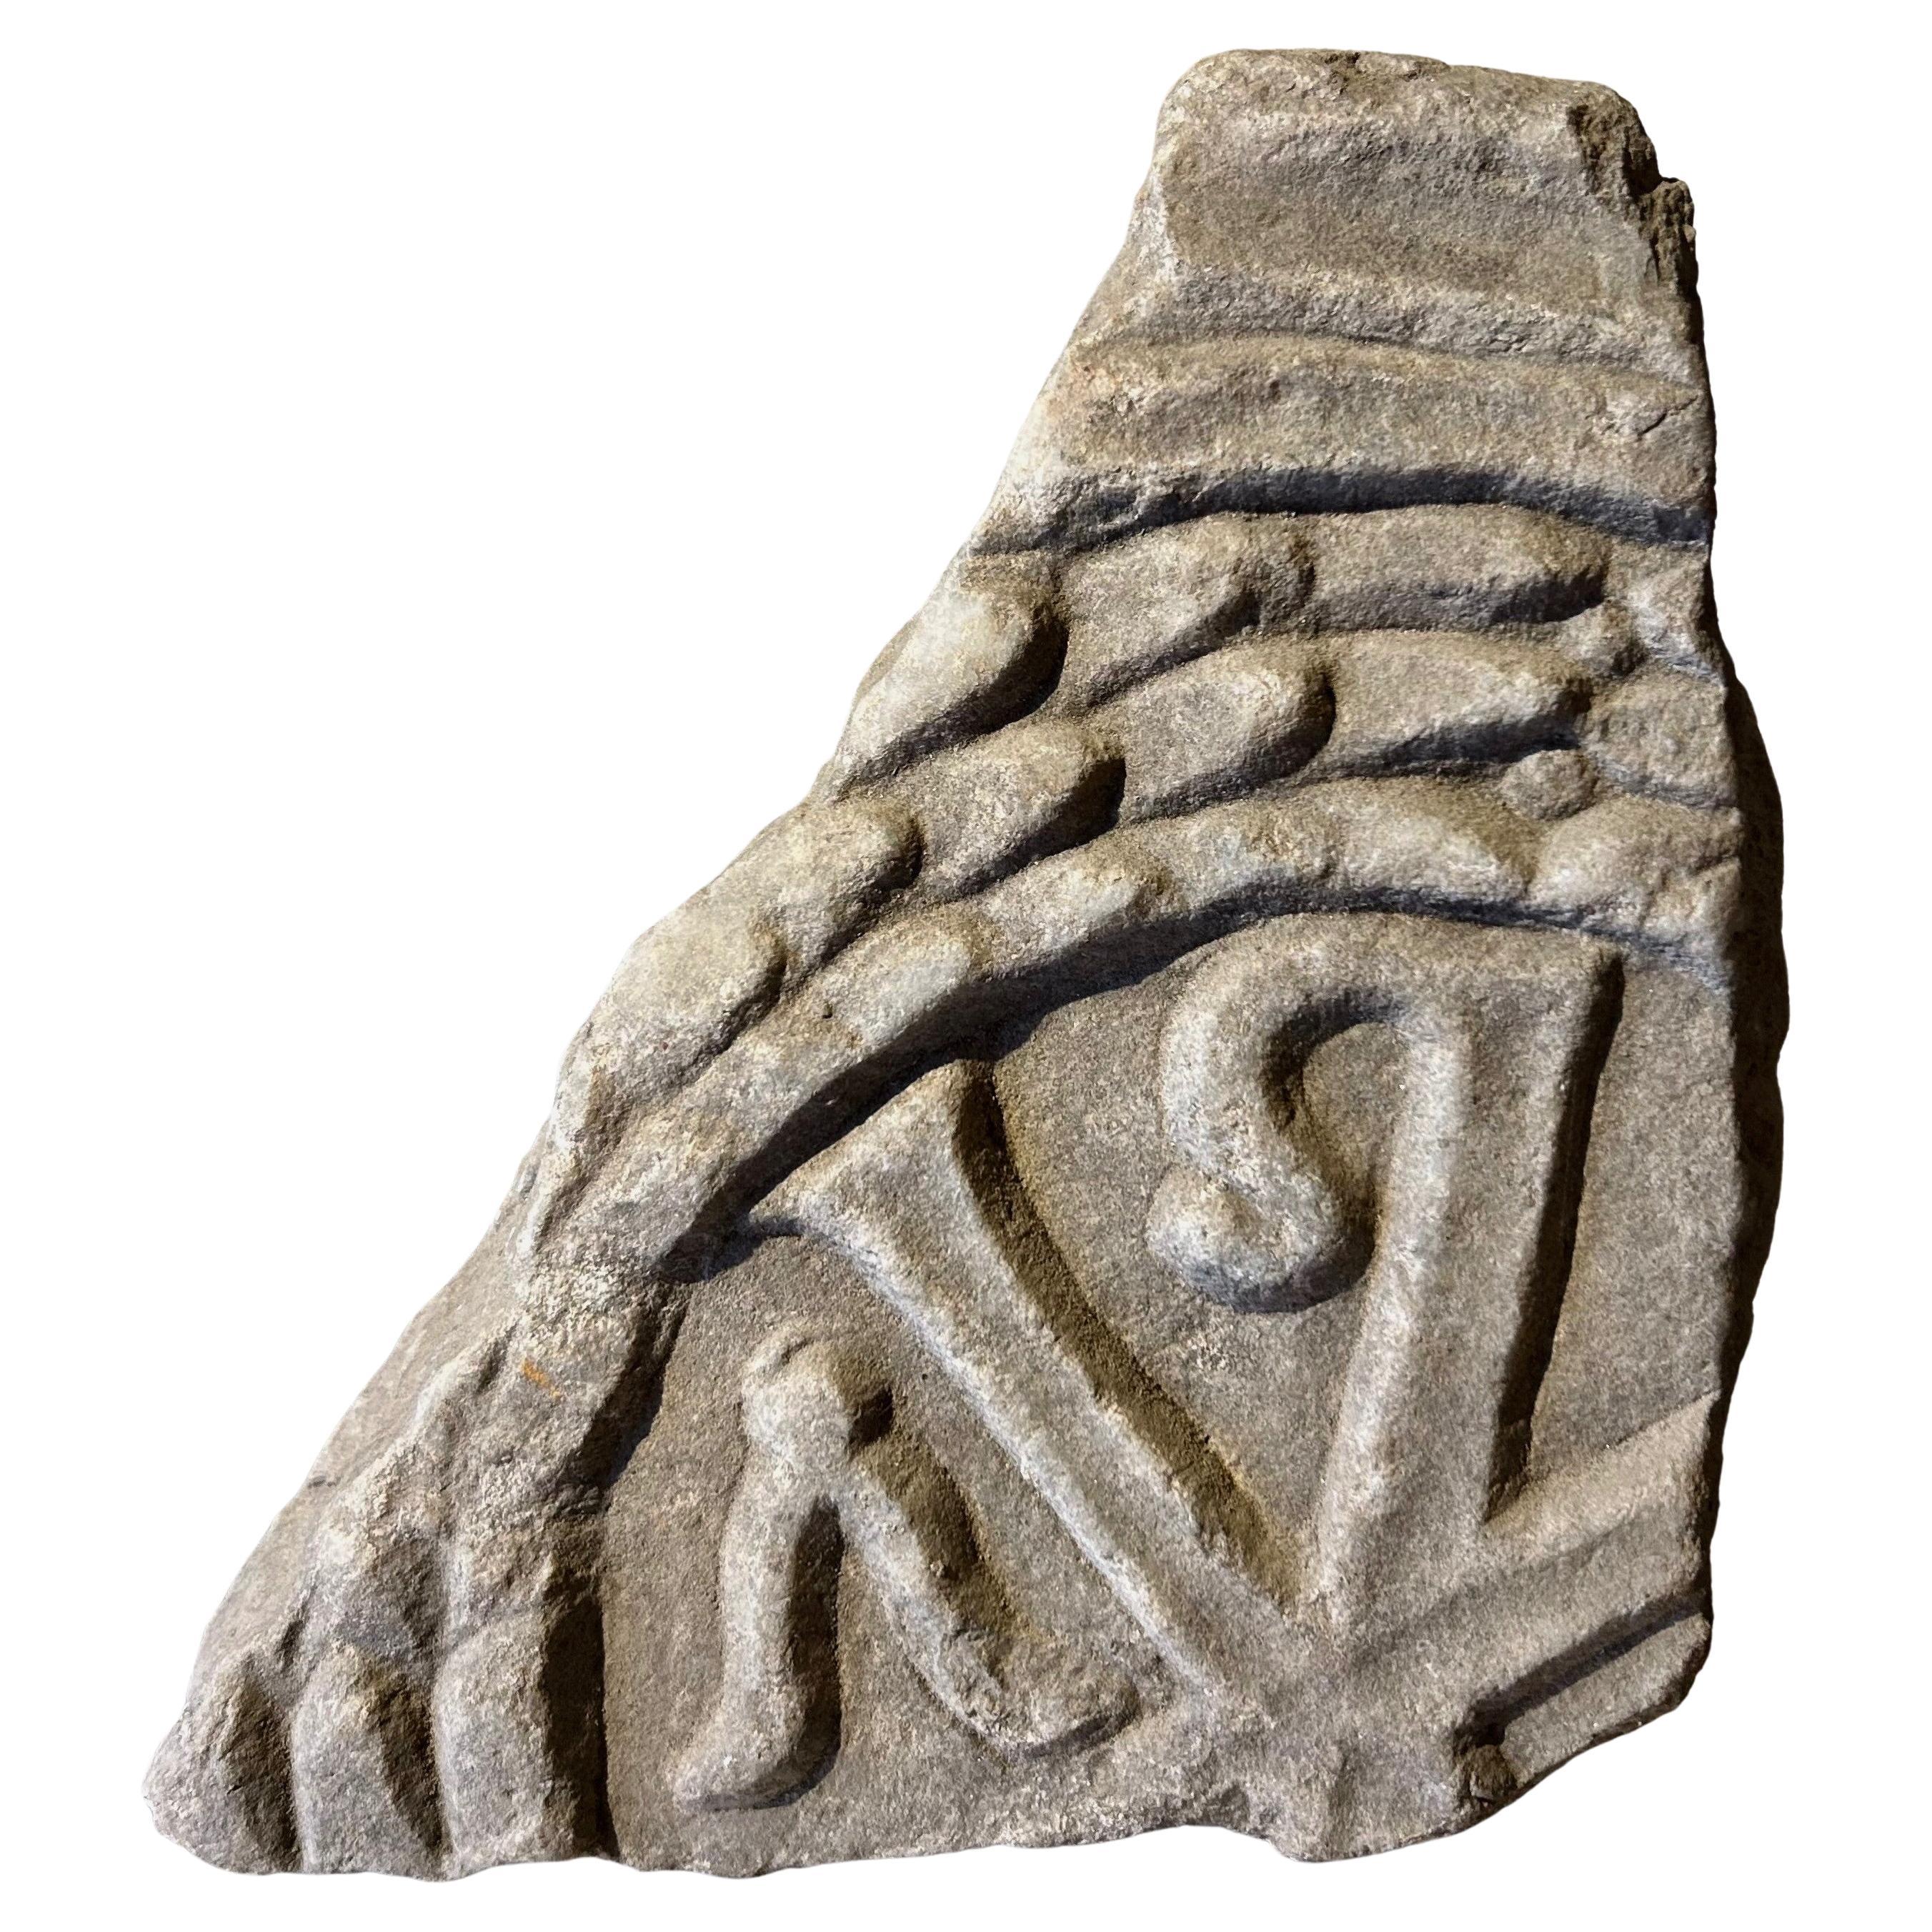 römisches Relief eines Christogramms aus Marmor